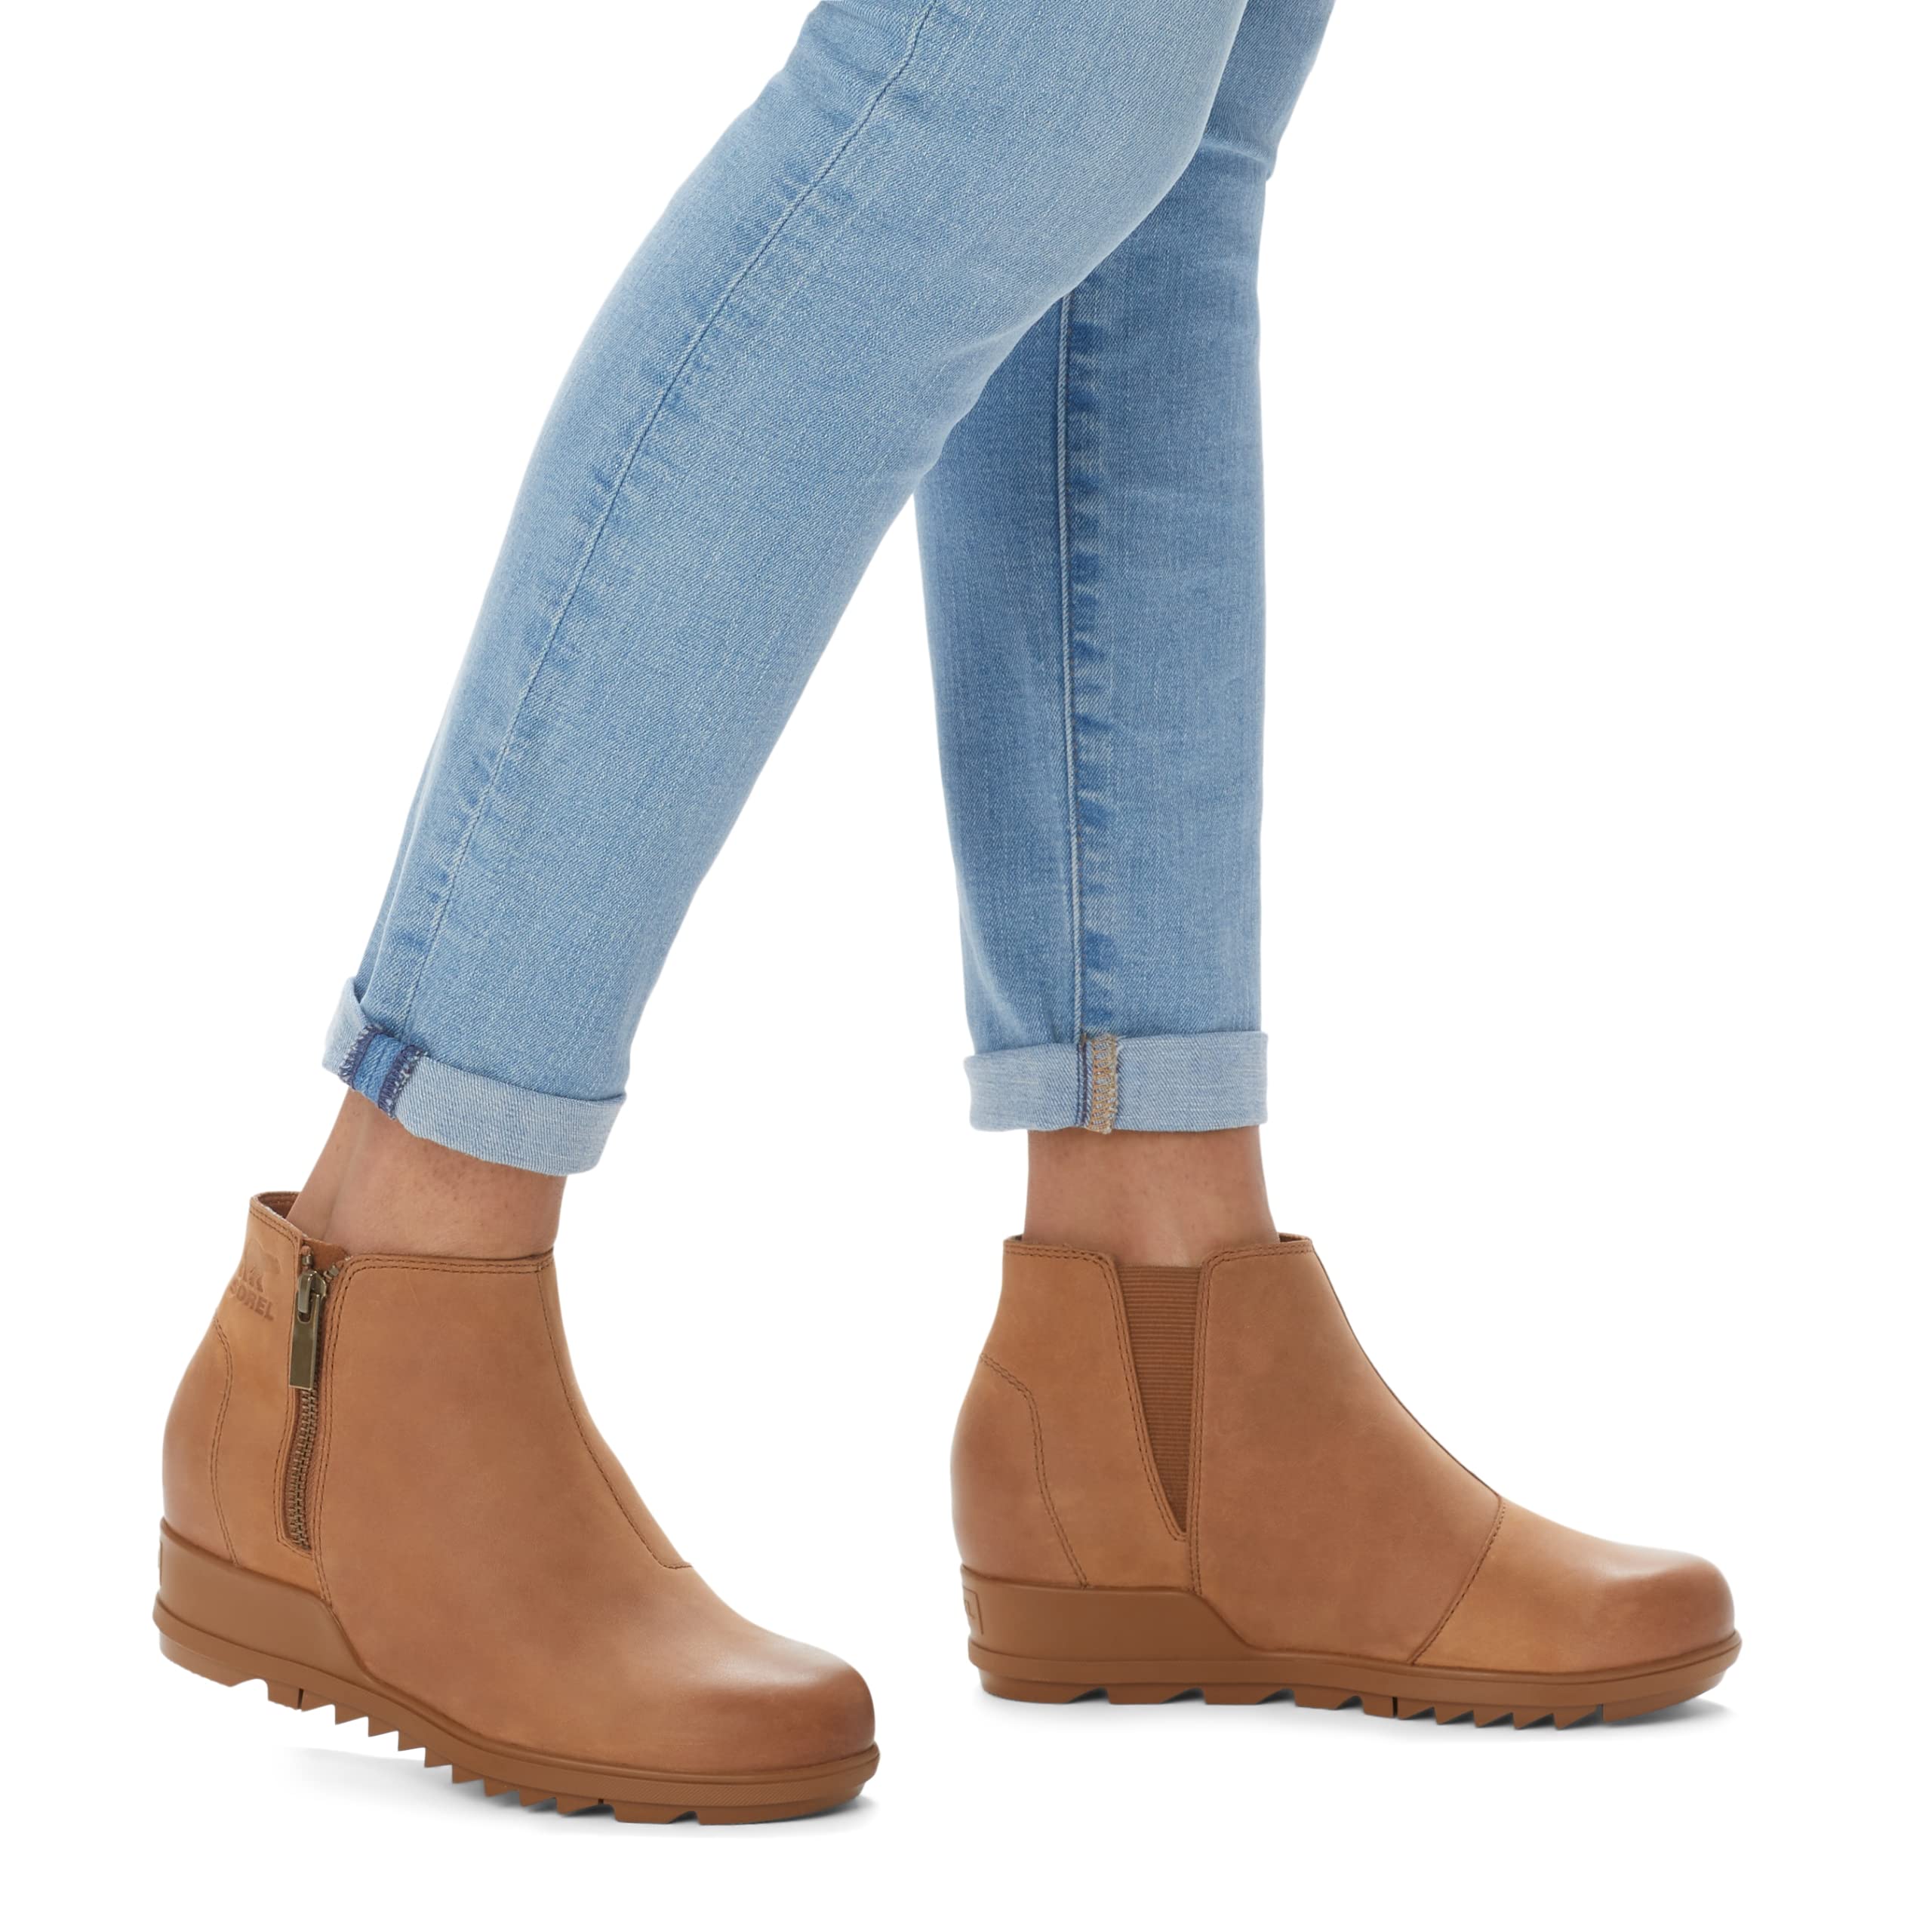 Sorel Women's Evie Zip Leather Boot